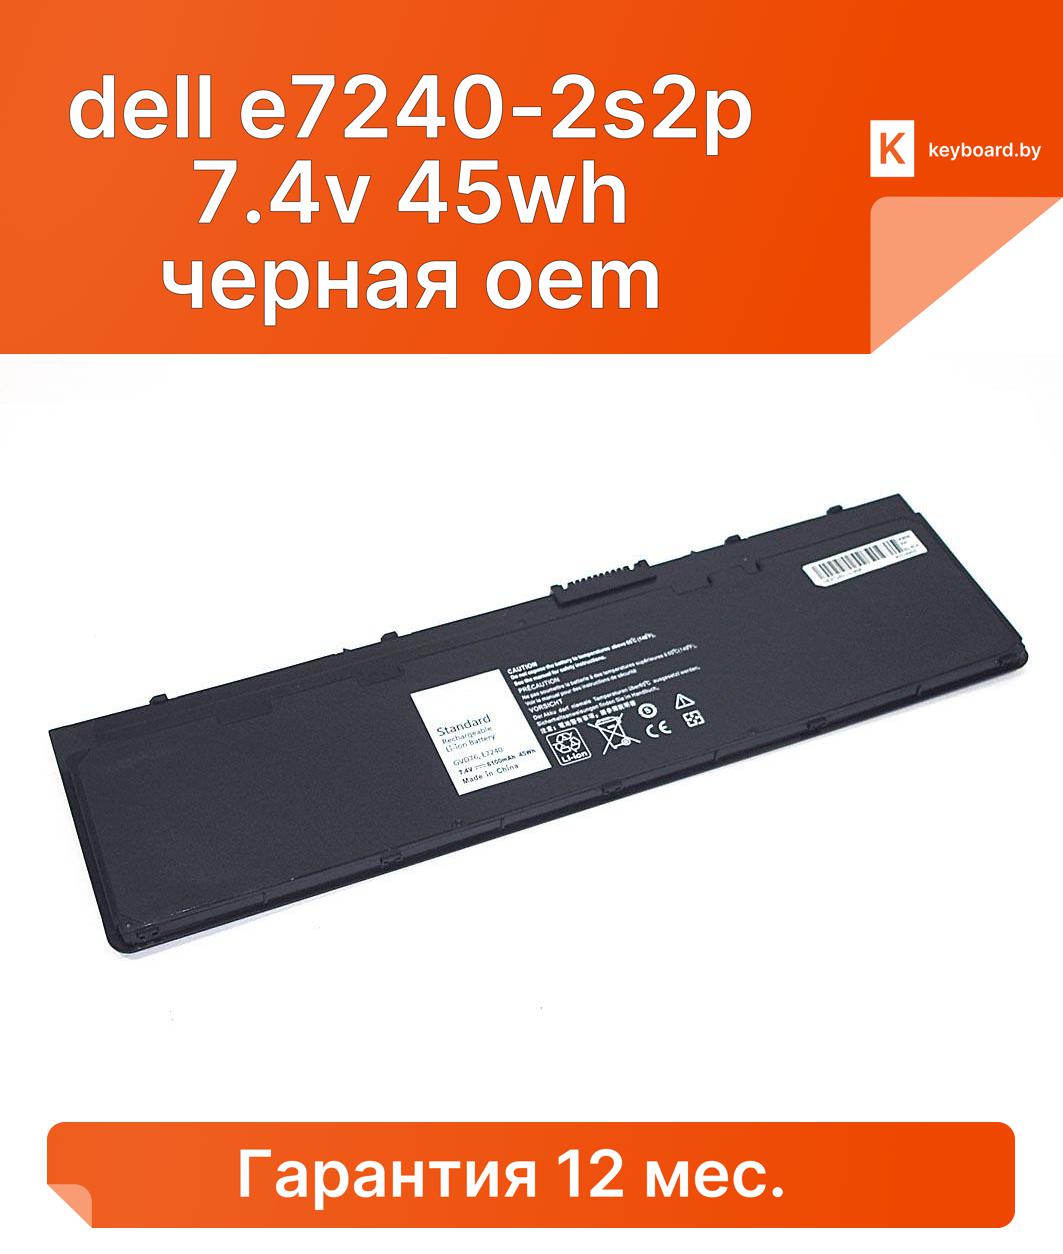 Аккумуляторная батарея для ноутбука dell e7240-2s2p 7.4v 45wh черная oem